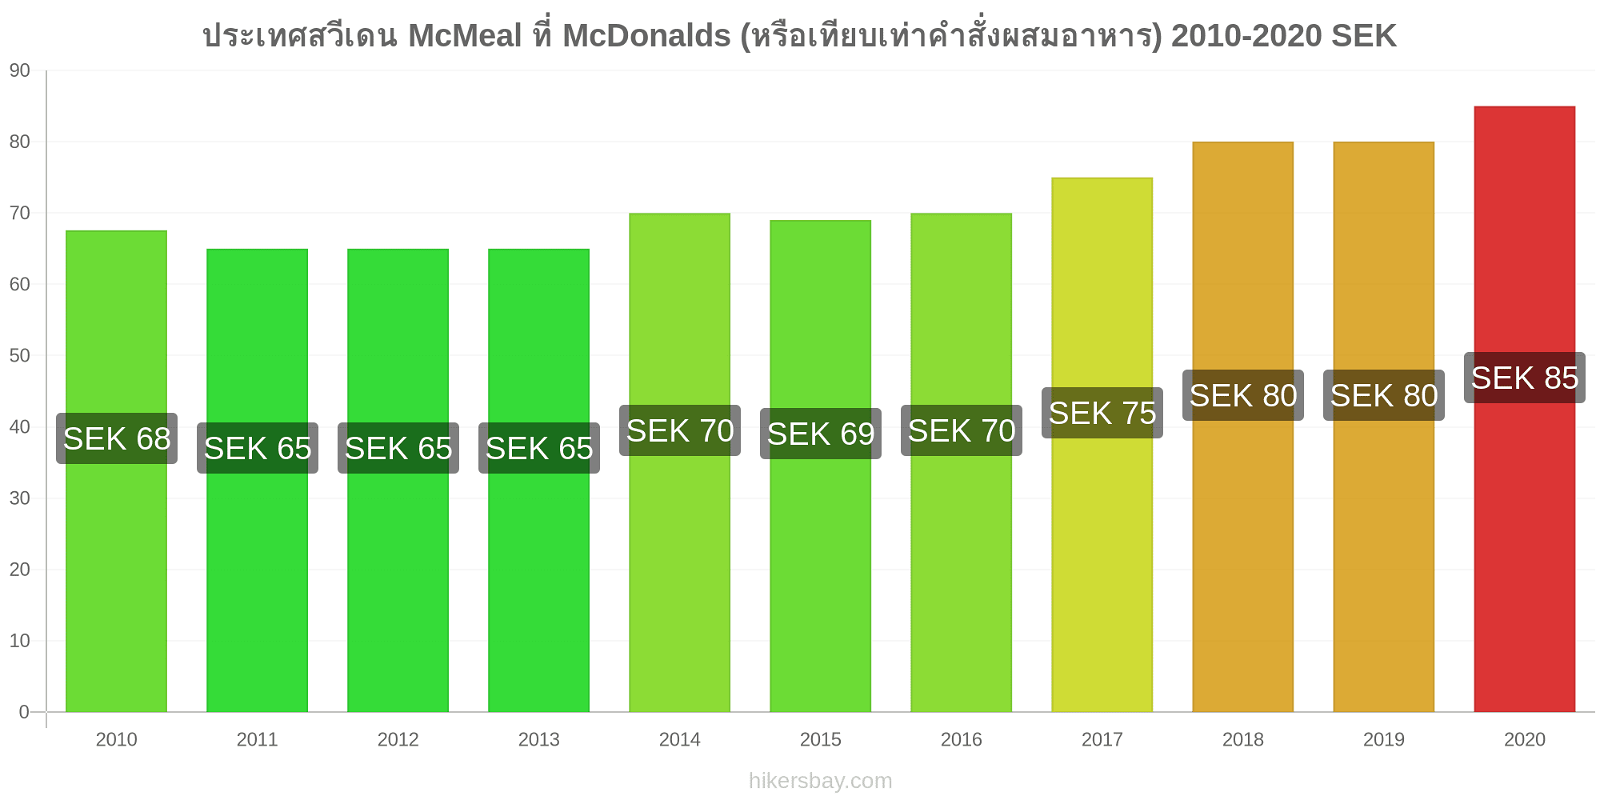 ประเทศสวีเดน การเปลี่ยนแปลงราคา McMeal ที่ McDonalds (หรือเทียบเท่าคำสั่งผสมอาหาร) hikersbay.com